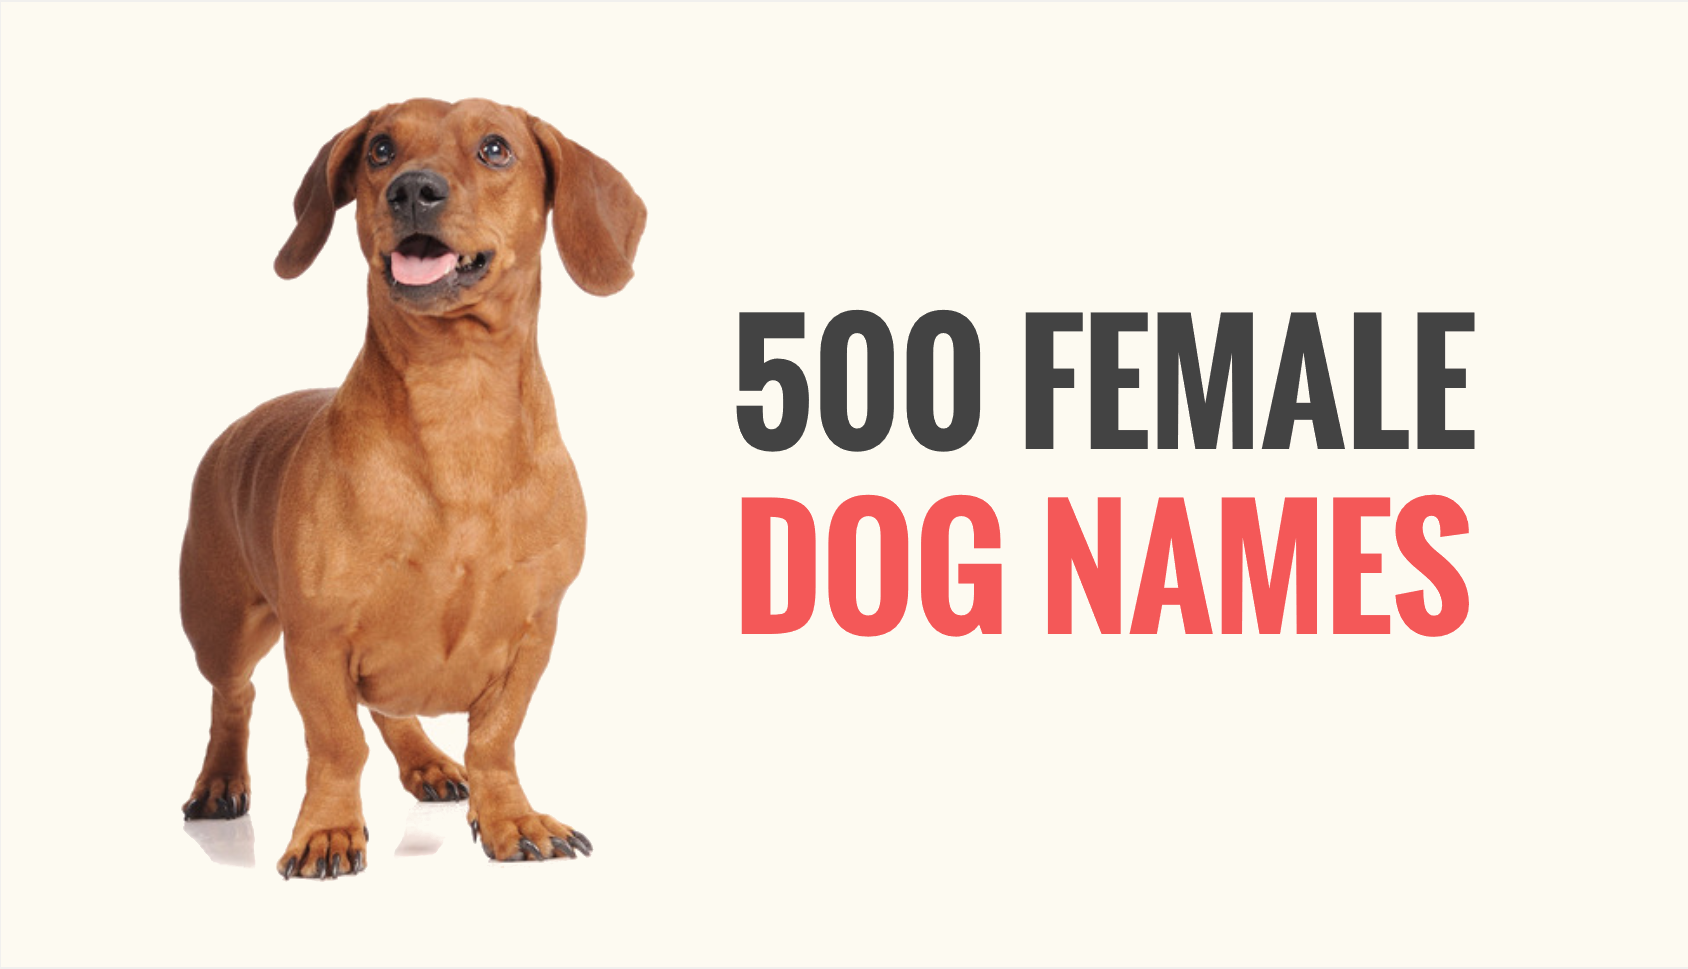 Cool Cute Girl Dog Names